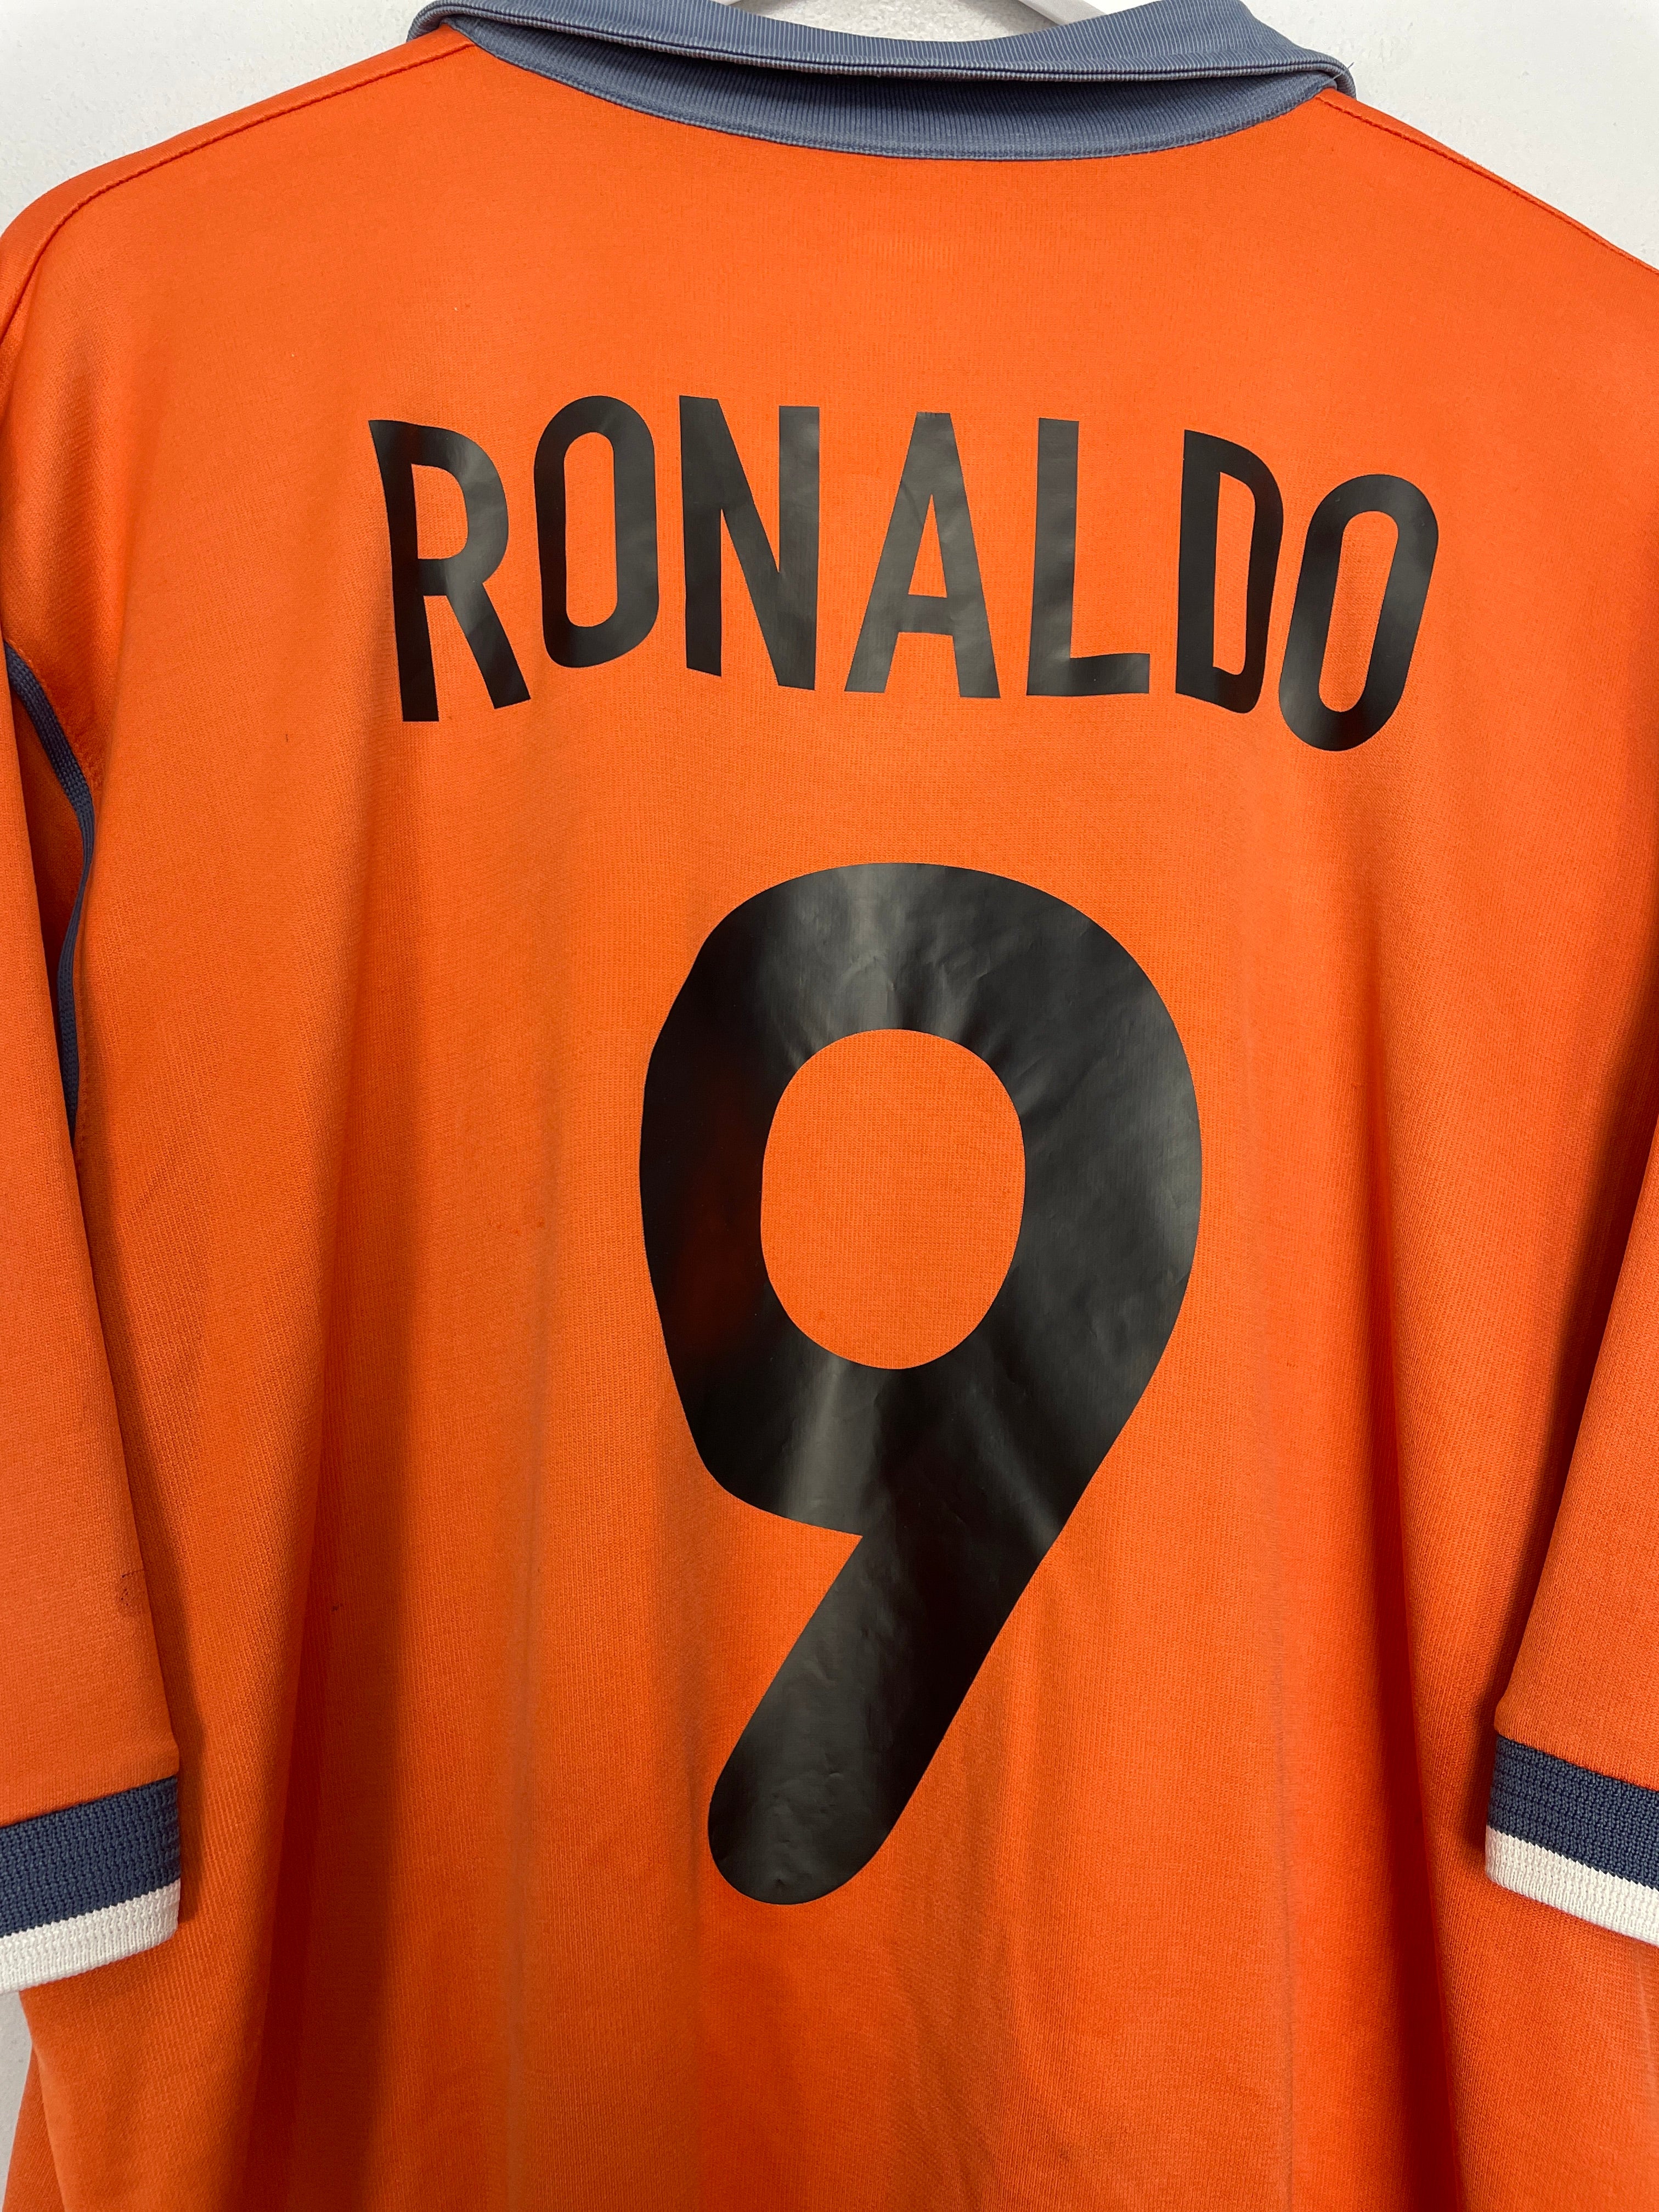 ronaldo 9 inter milan shirt